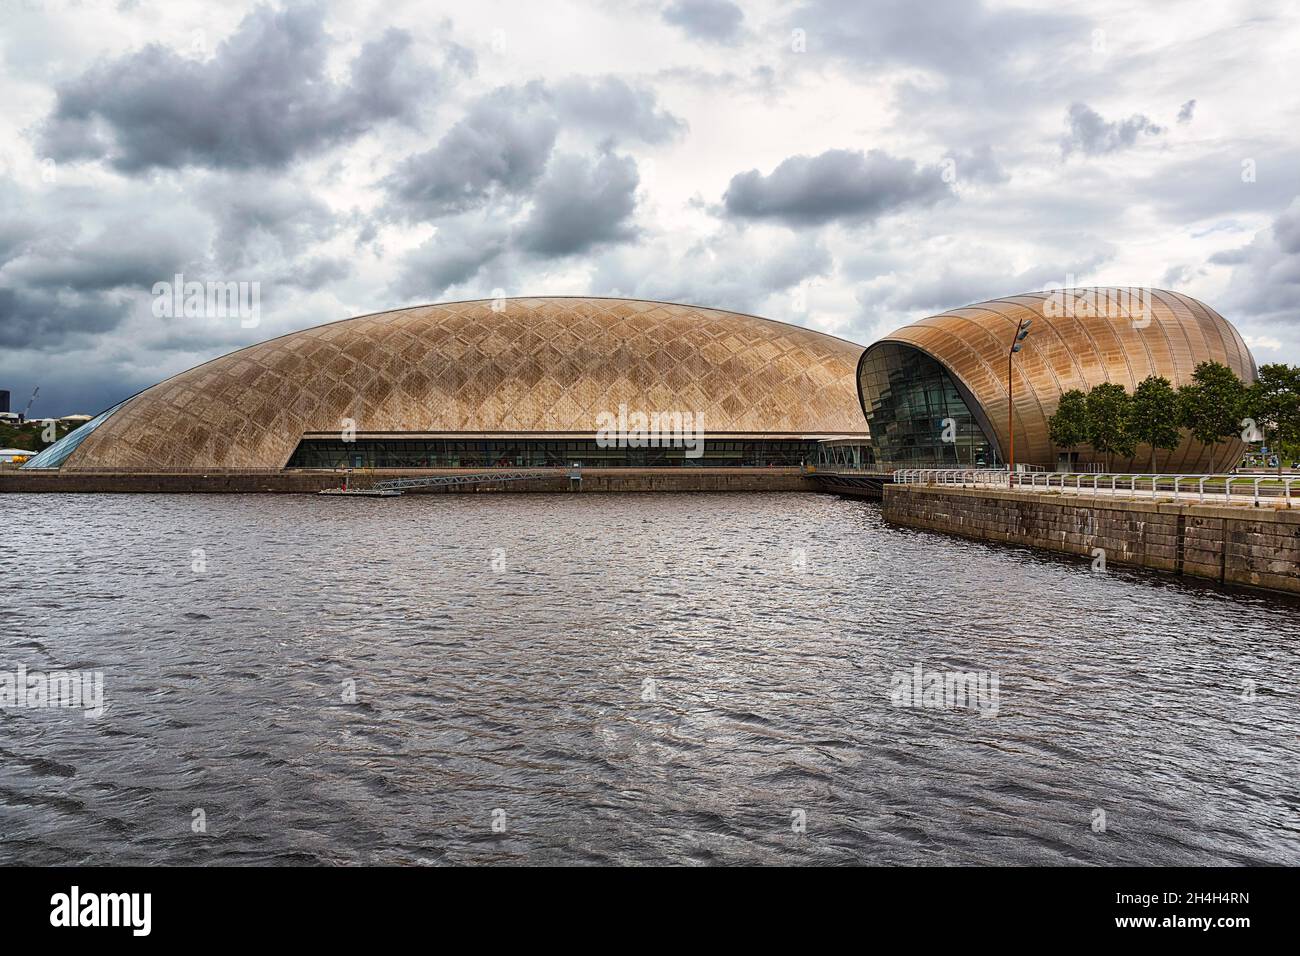 Centre scientifique de Glasgow et cinéma IMAX, architecture moderne, Clyde Waterfront Regeneration, Glasgow, Écosse,Royaume-Uni Banque D'Images